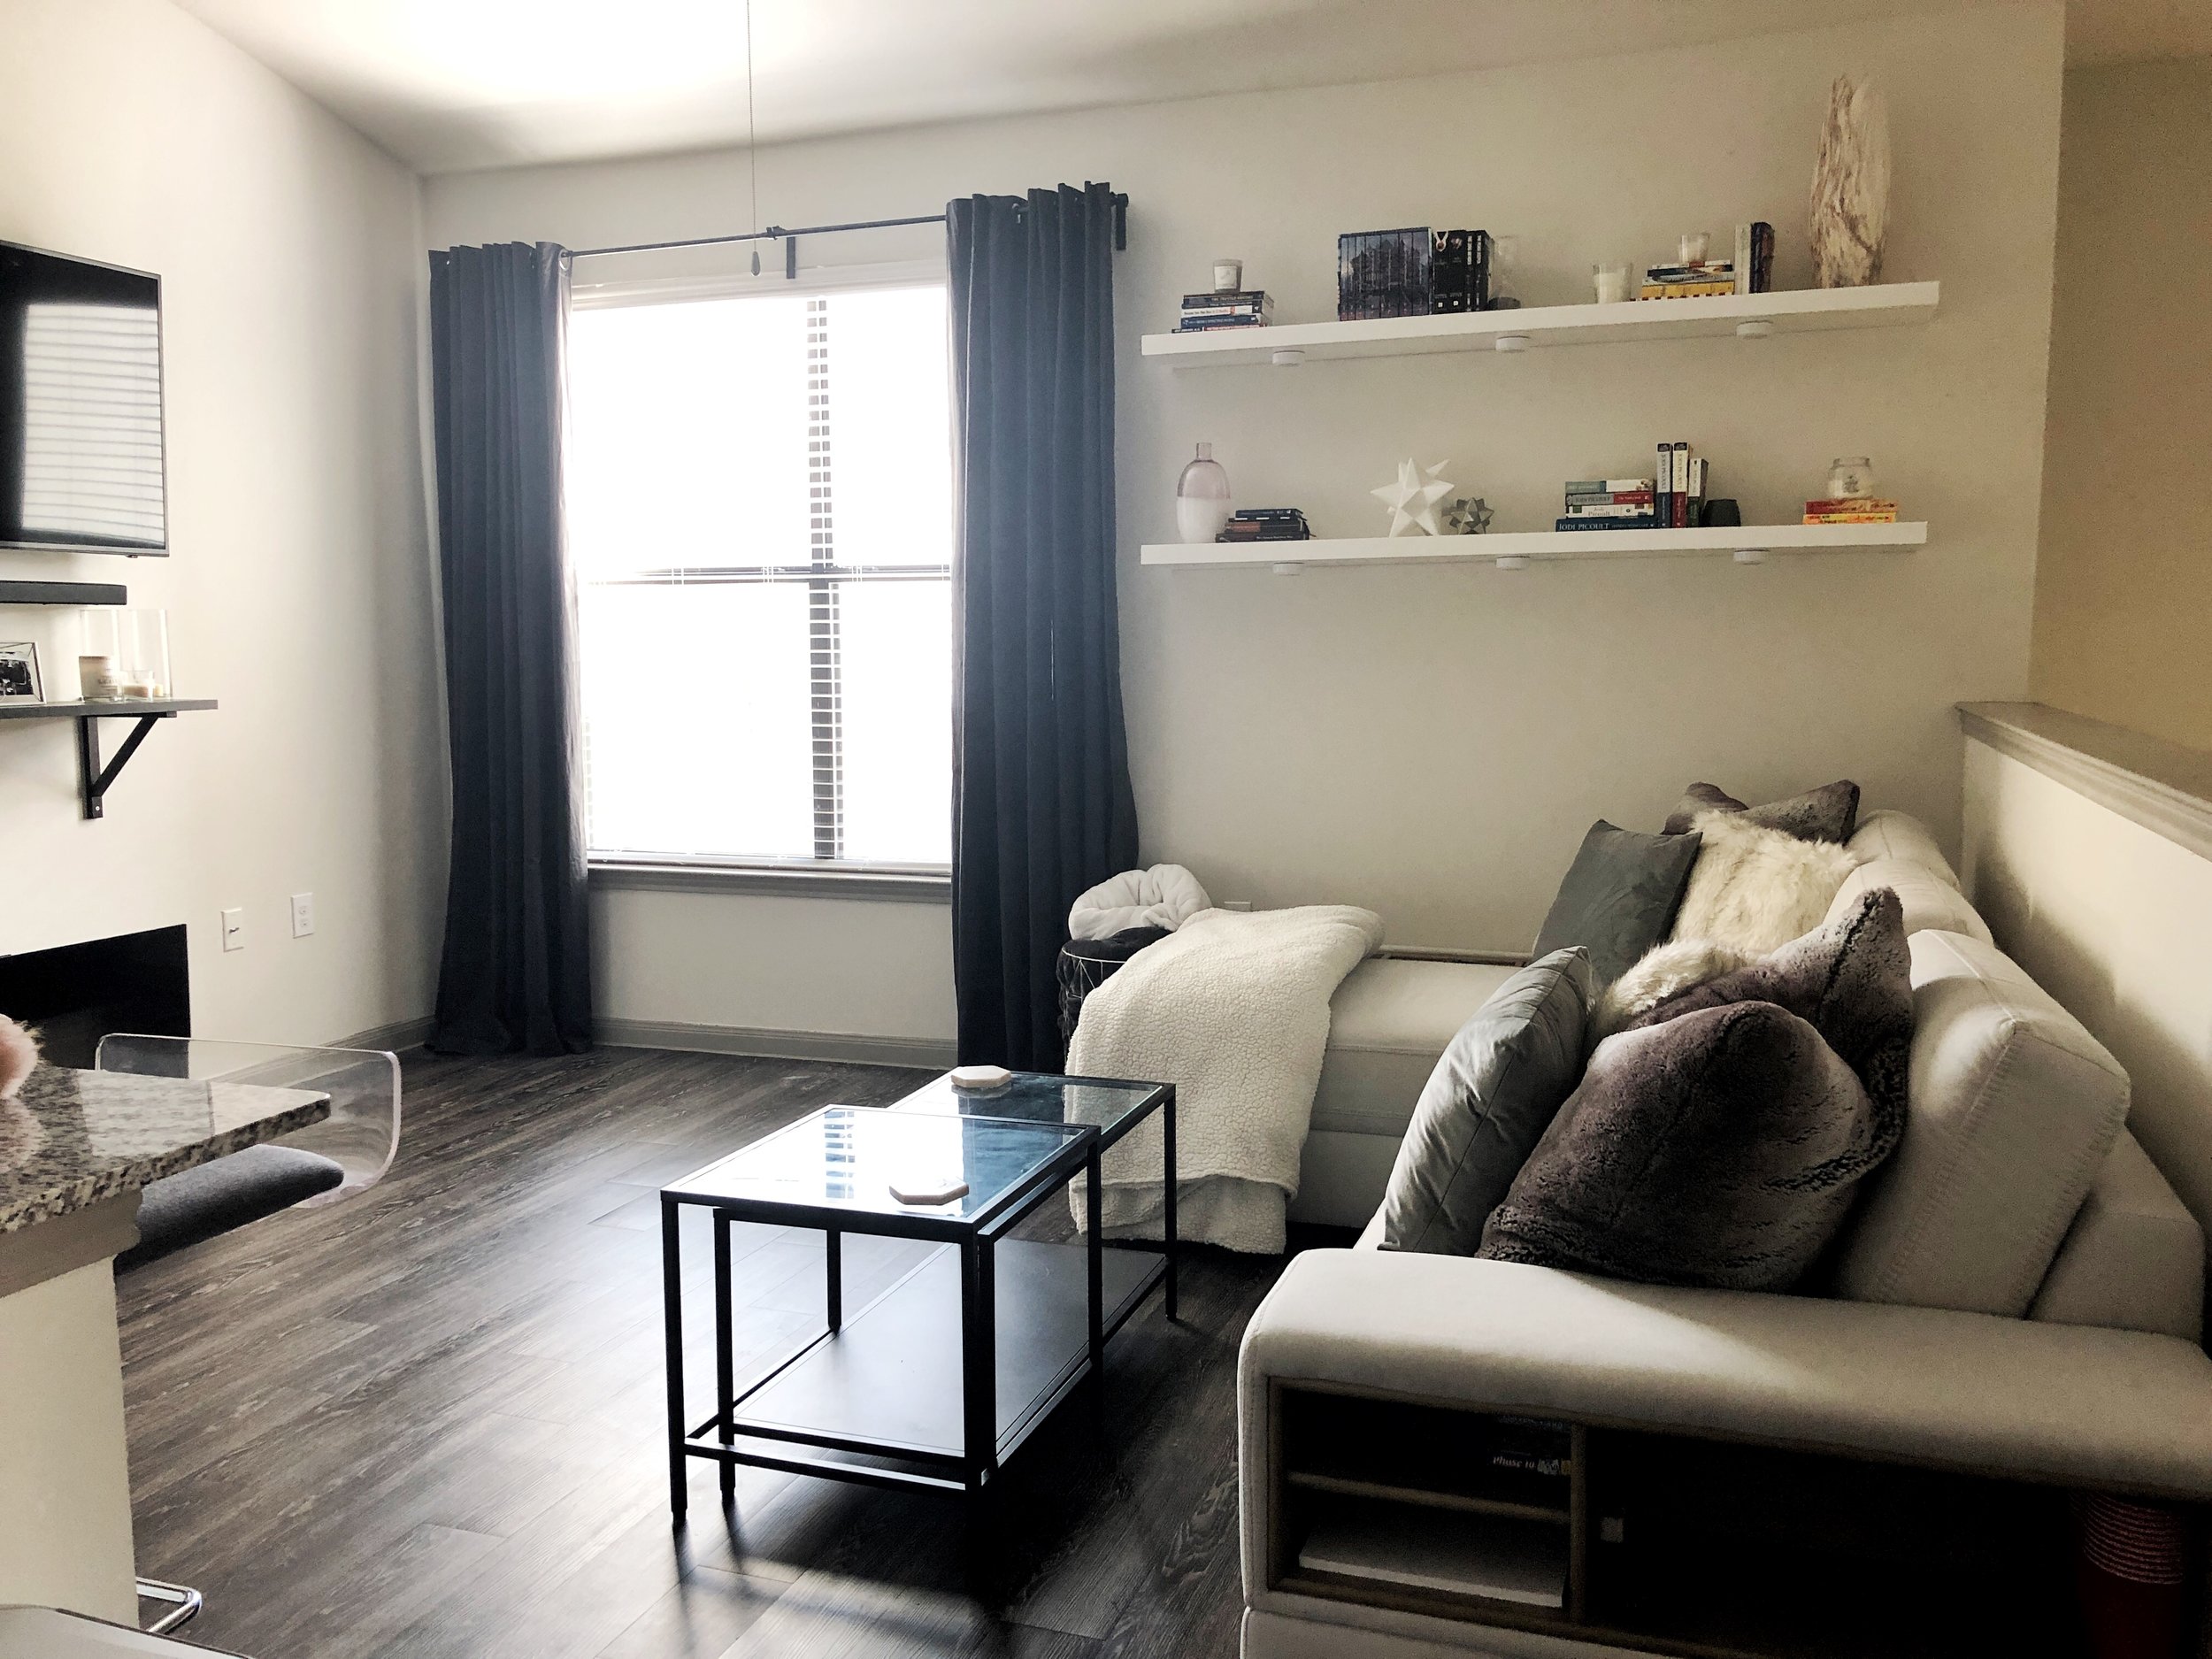 KSH - Living Room In Progress